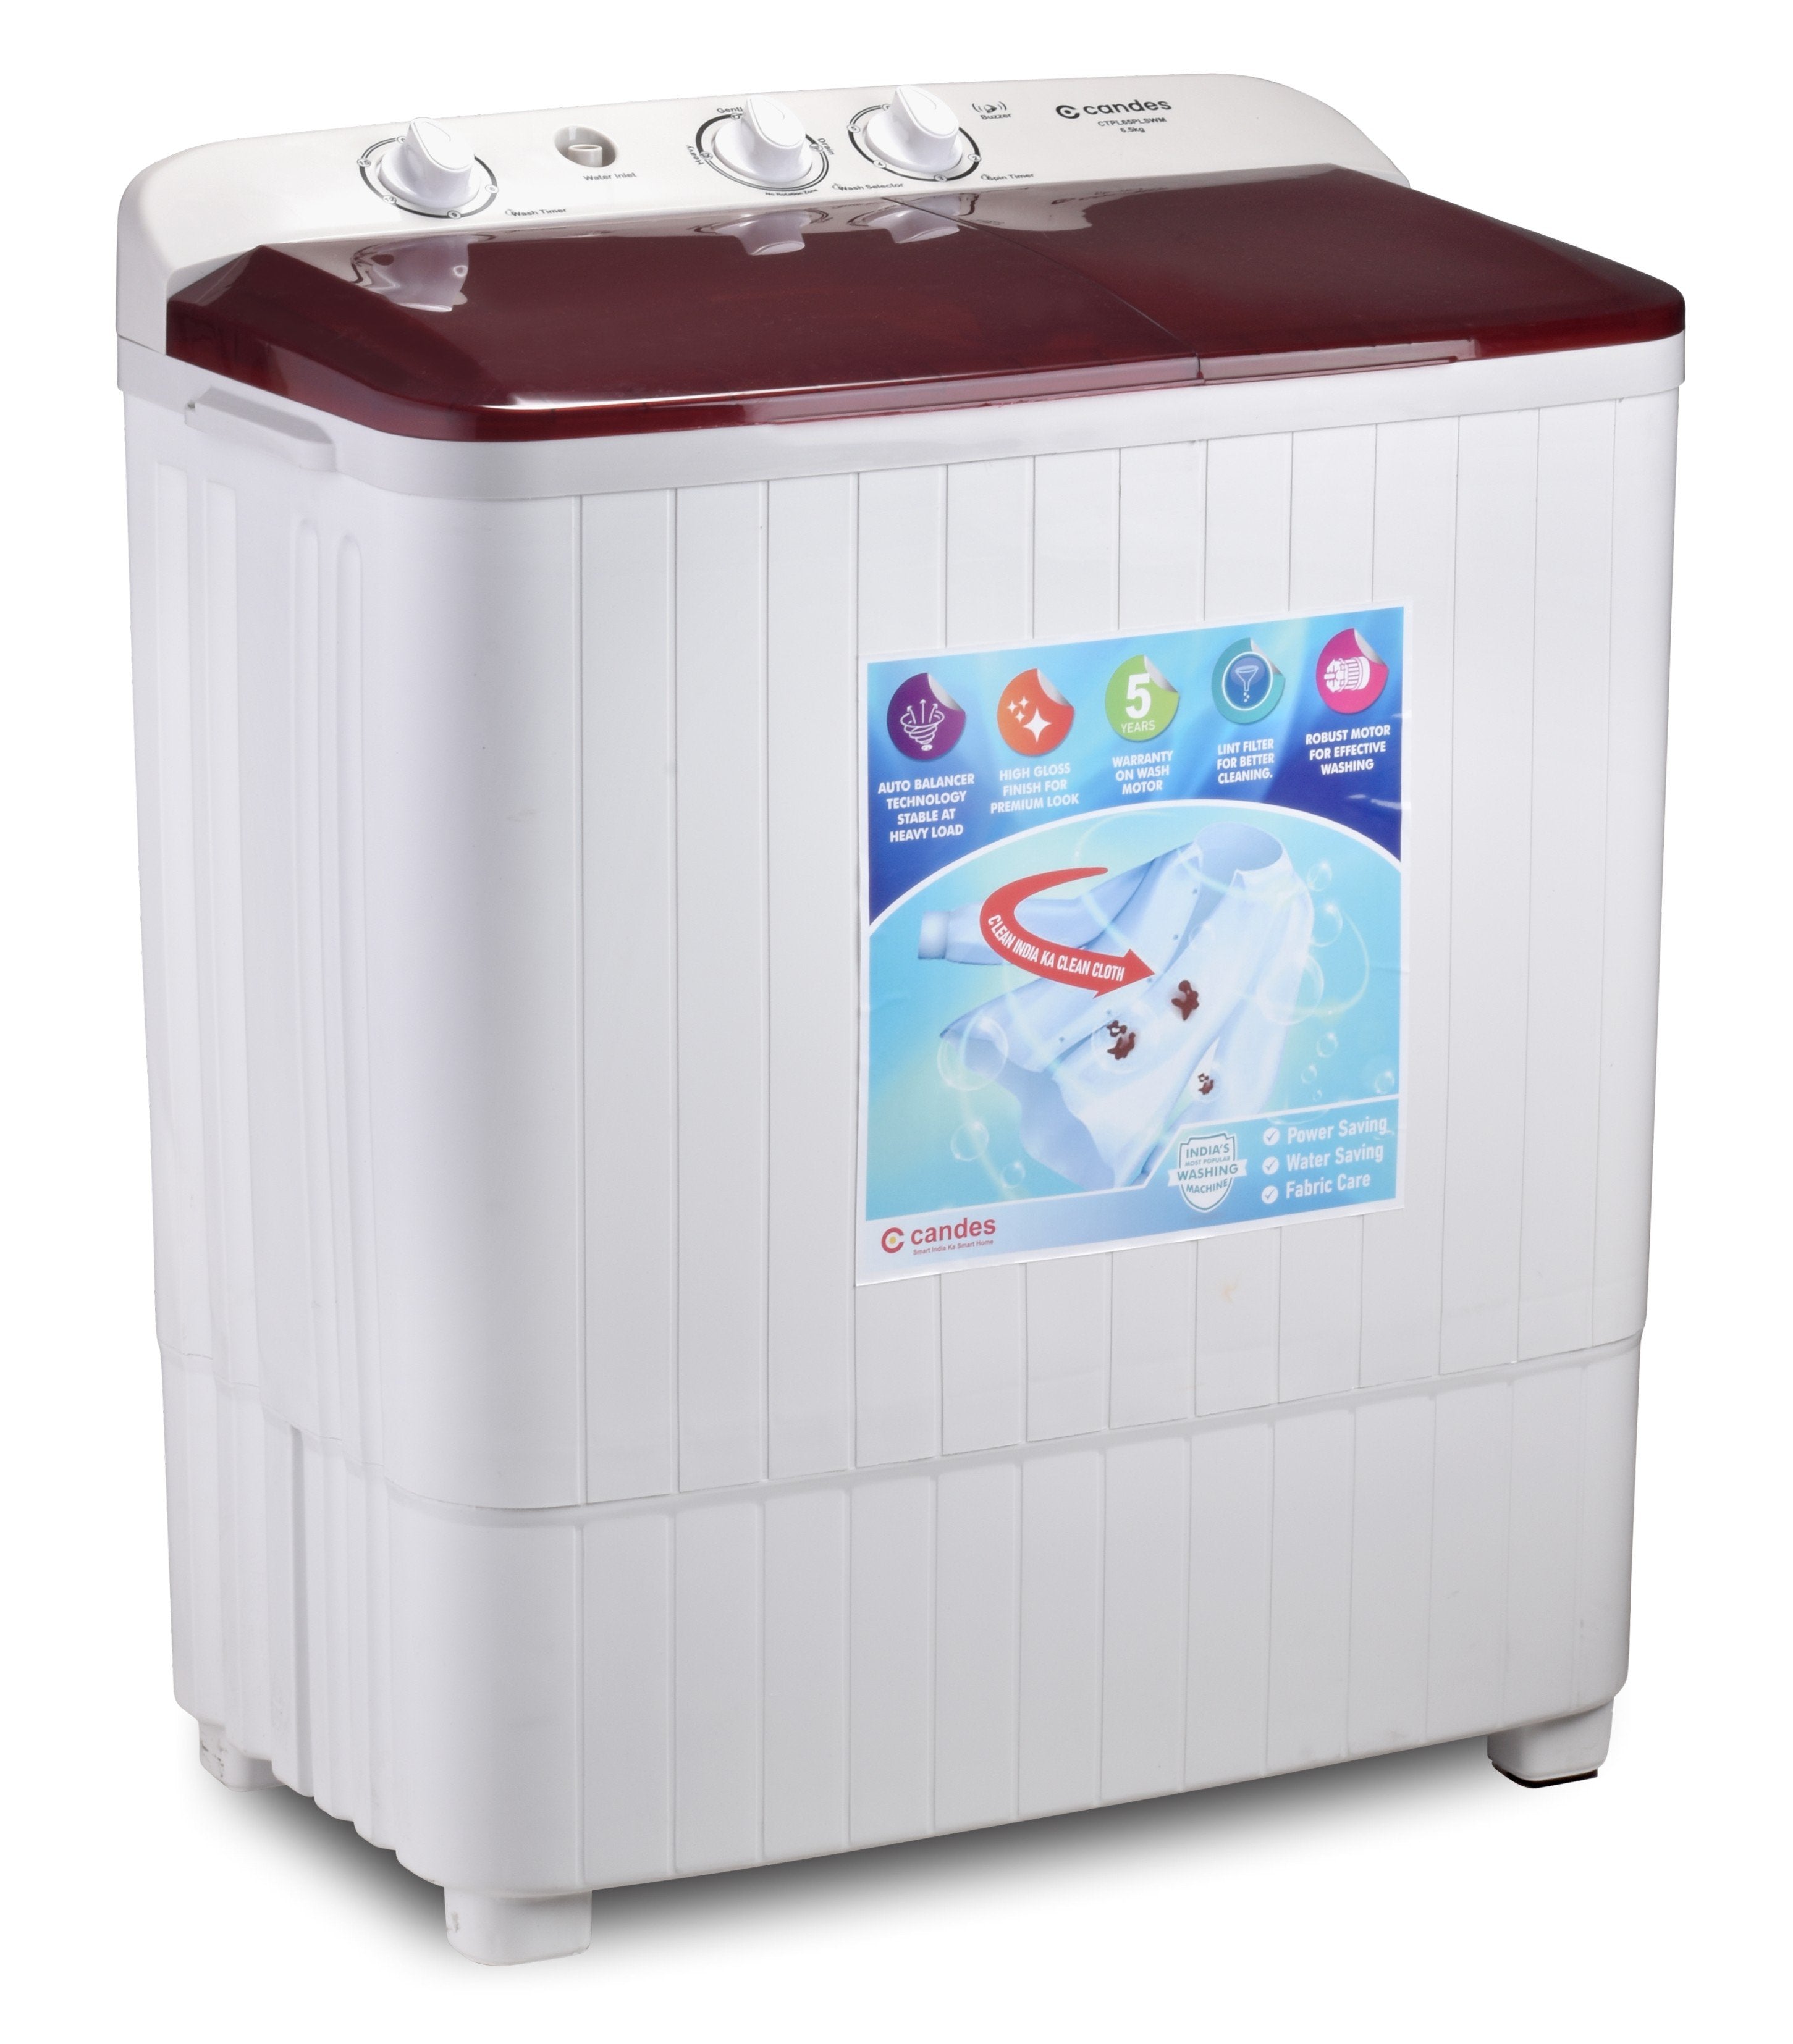 कैंडेस वॉशिंग-मशीन 6.5 किग्रा